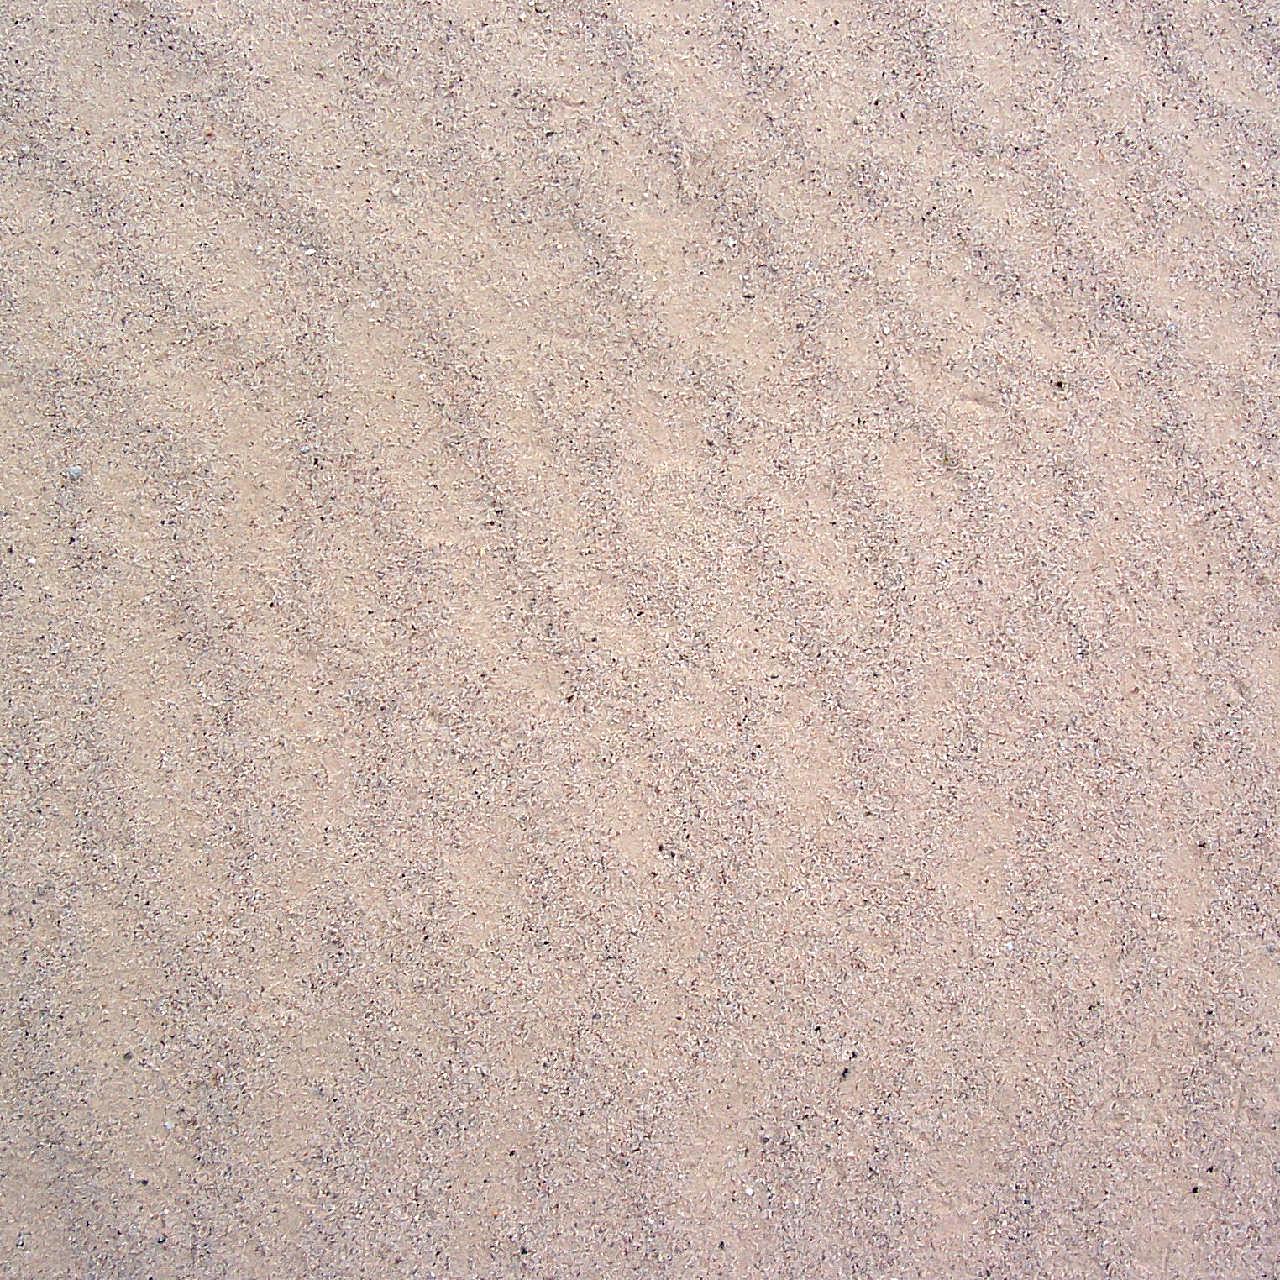 沙地背景图片高清摄影